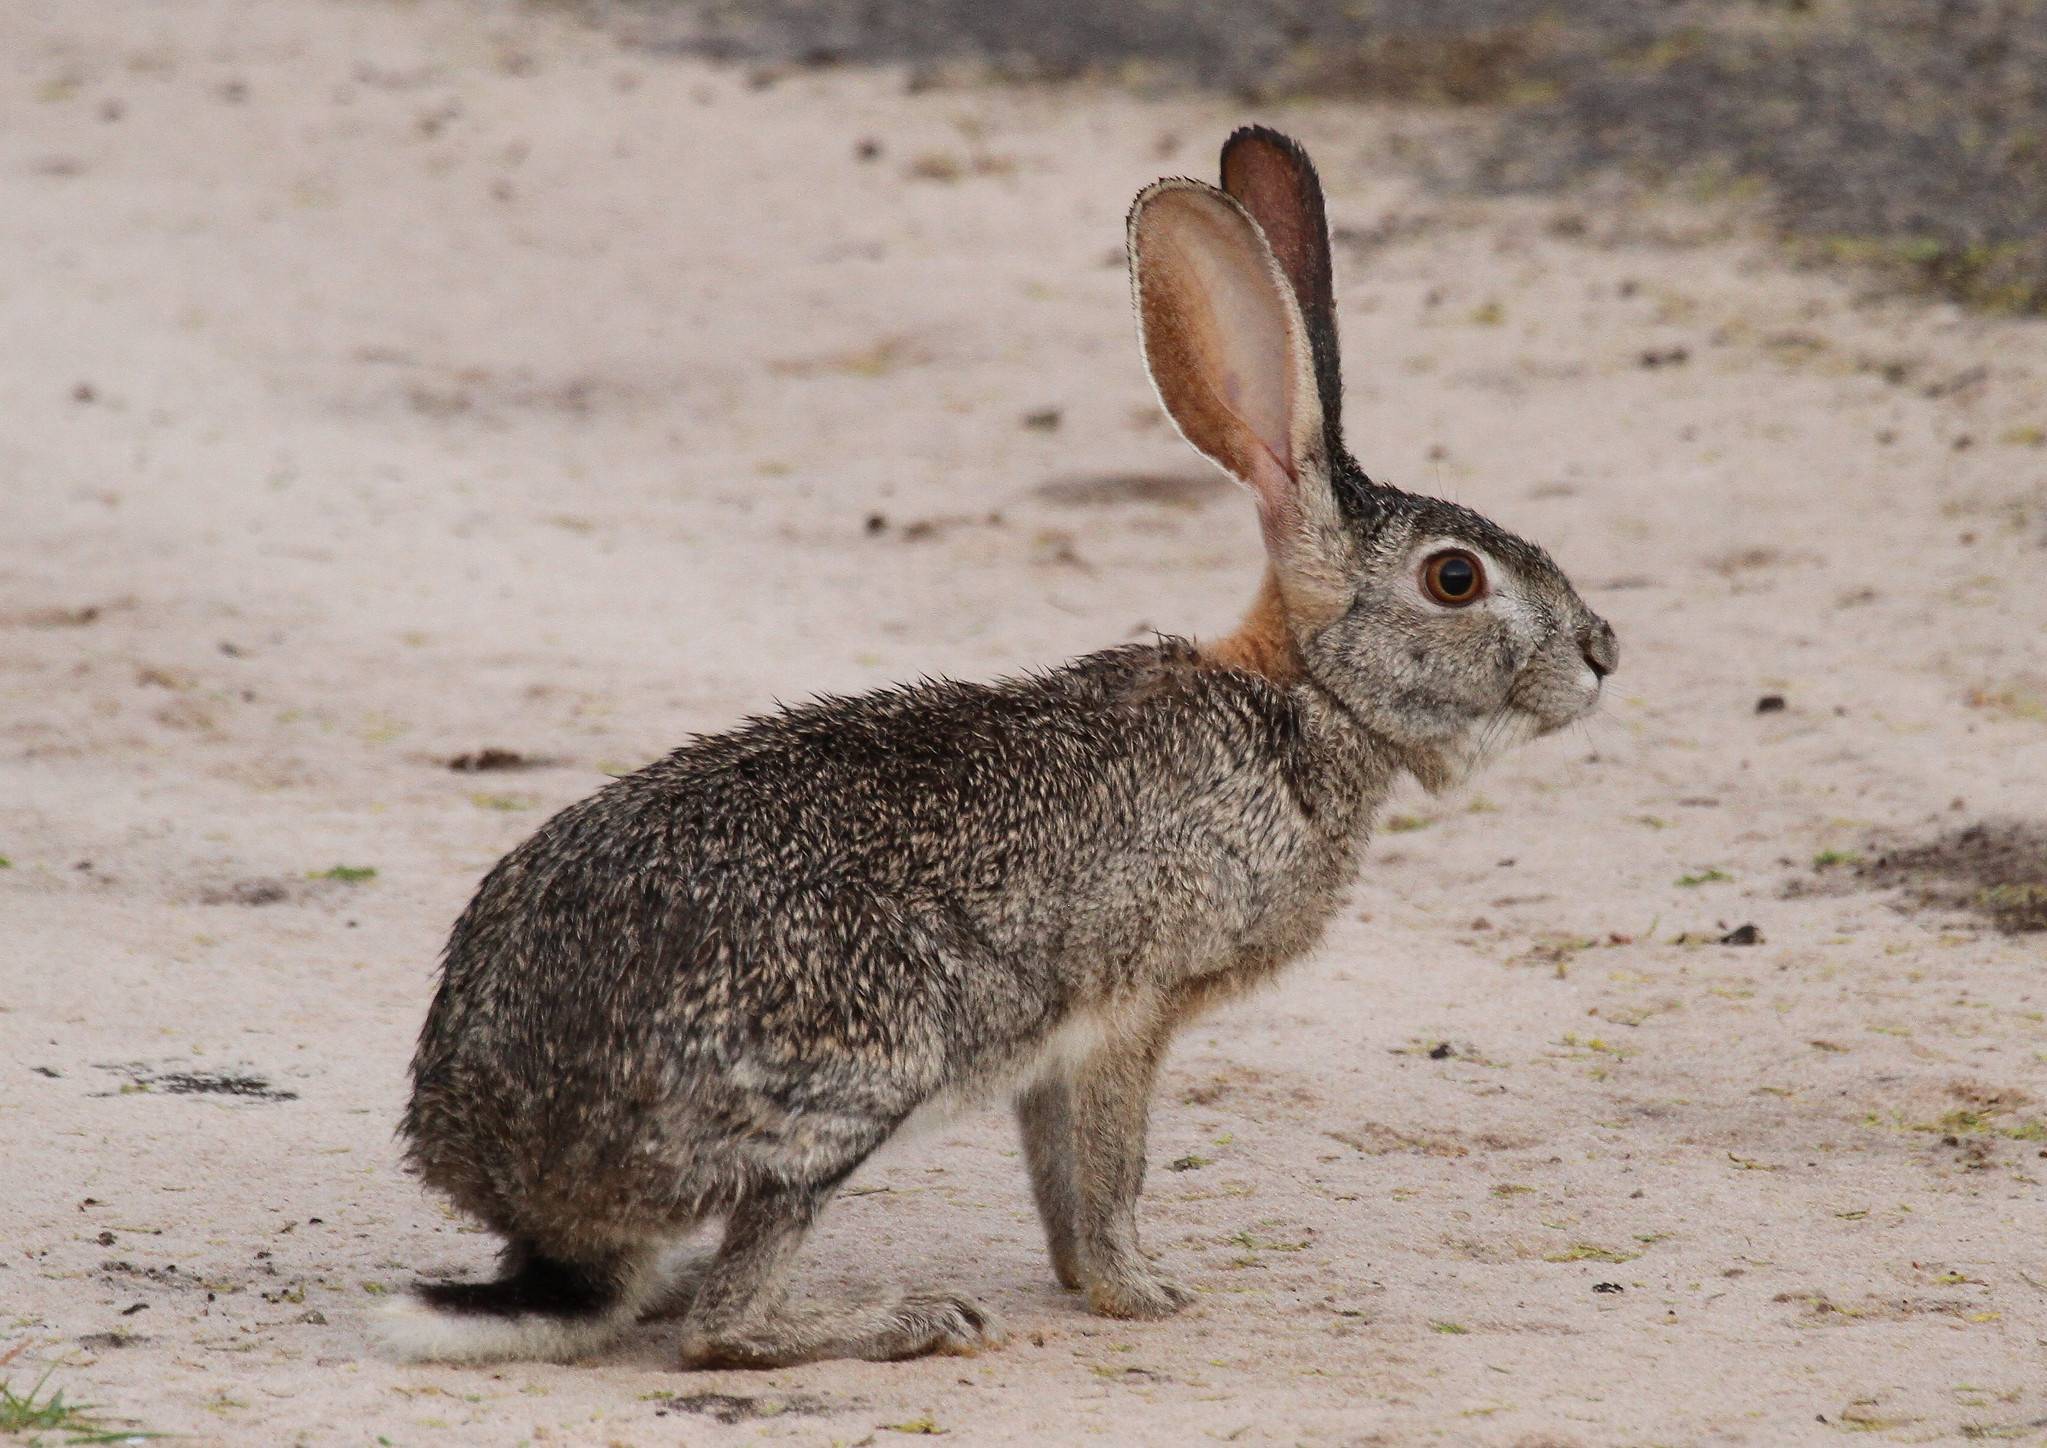 Дикие кролики: история происхождения, внешний вид, образ жизни